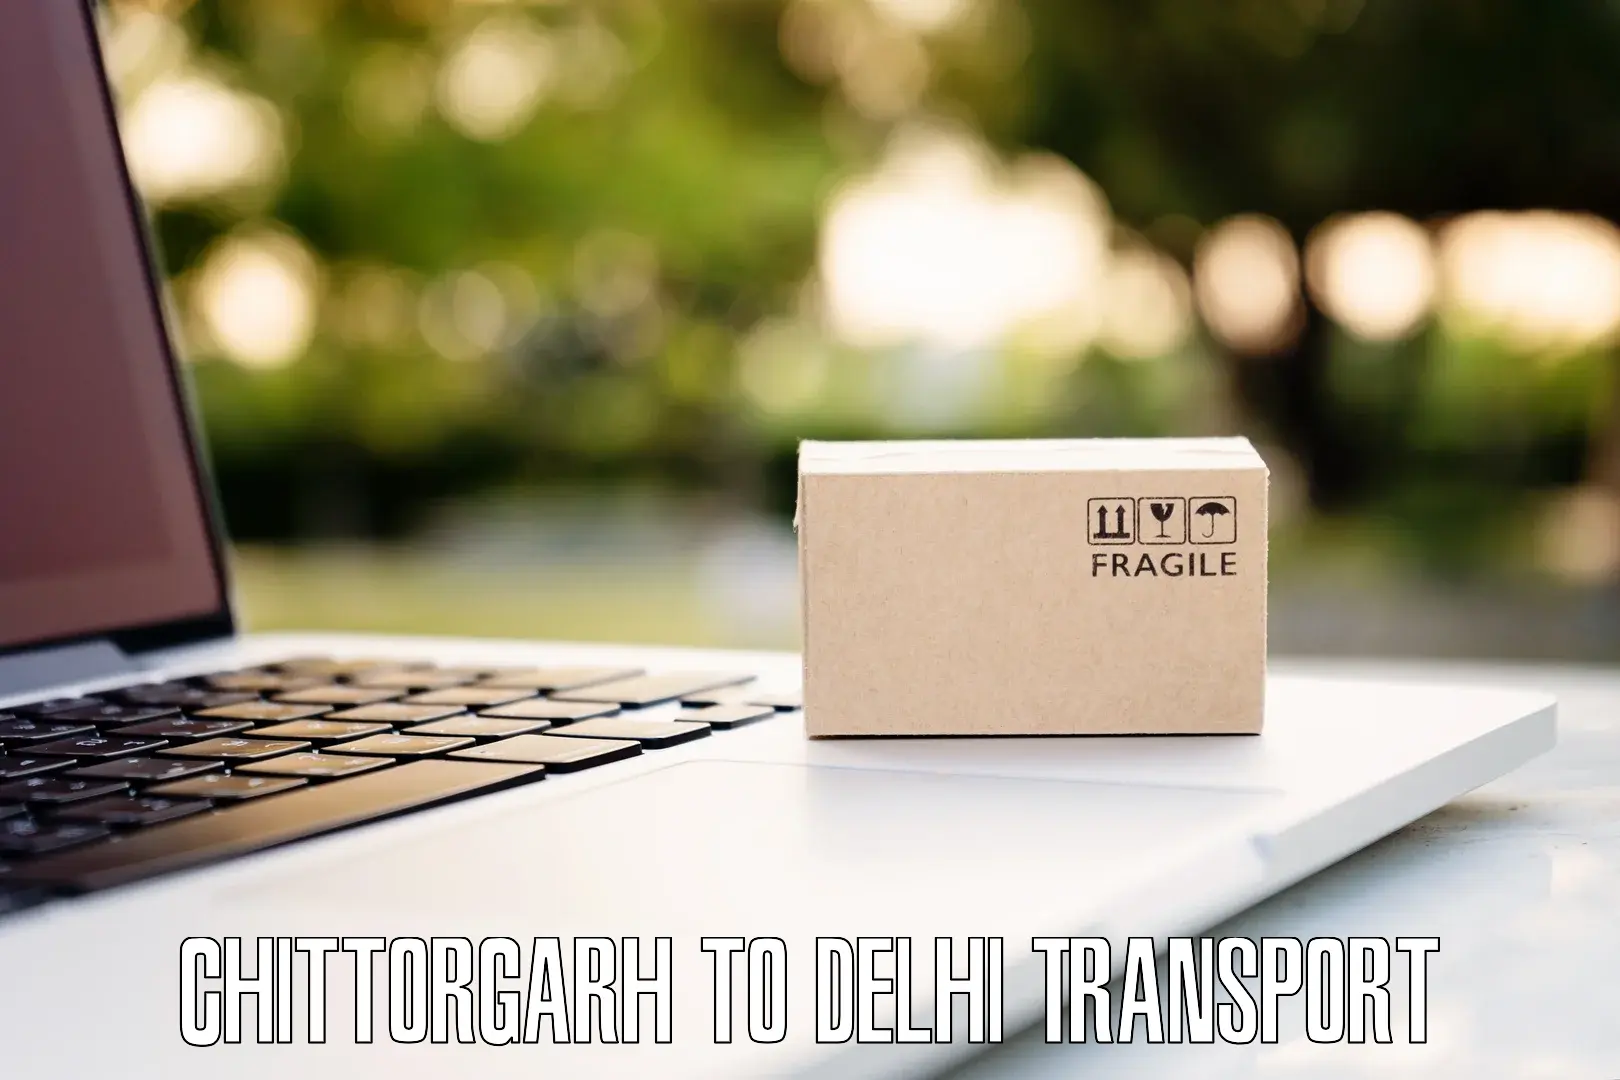 Cargo train transport services Chittorgarh to Delhi